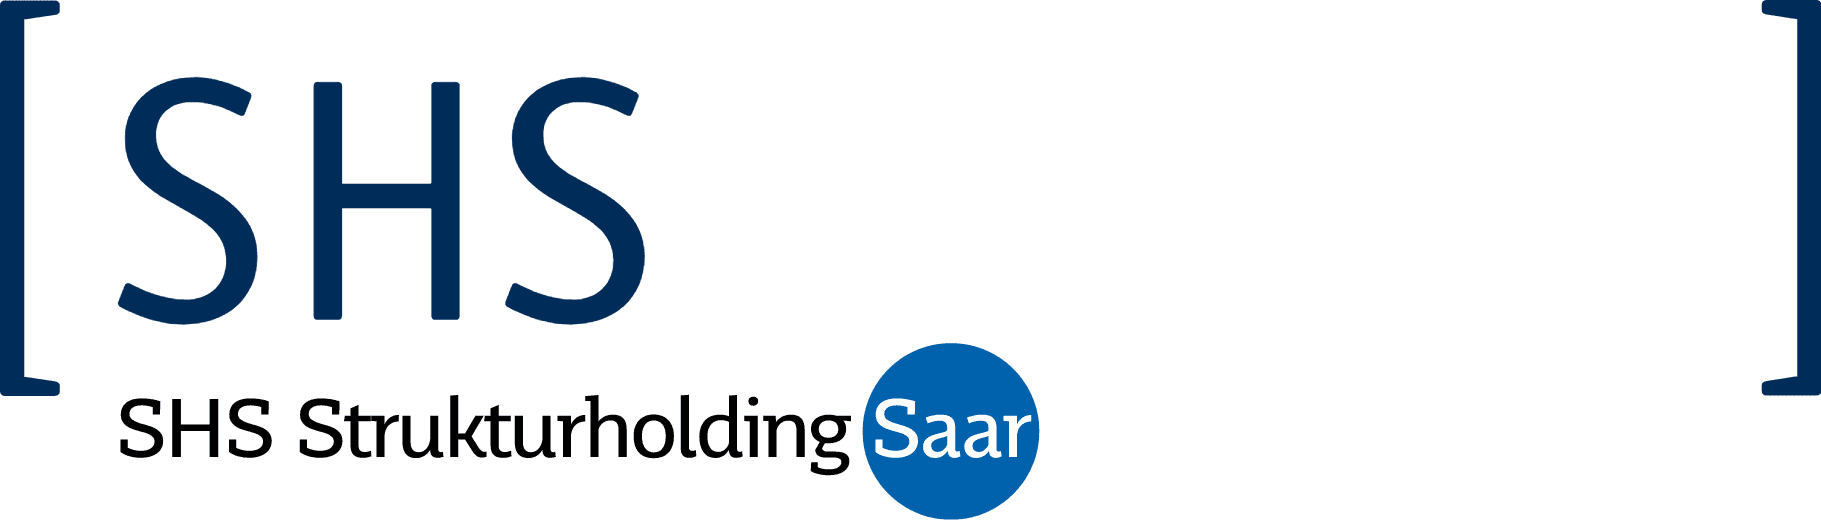 SHS Strukturholding Saar